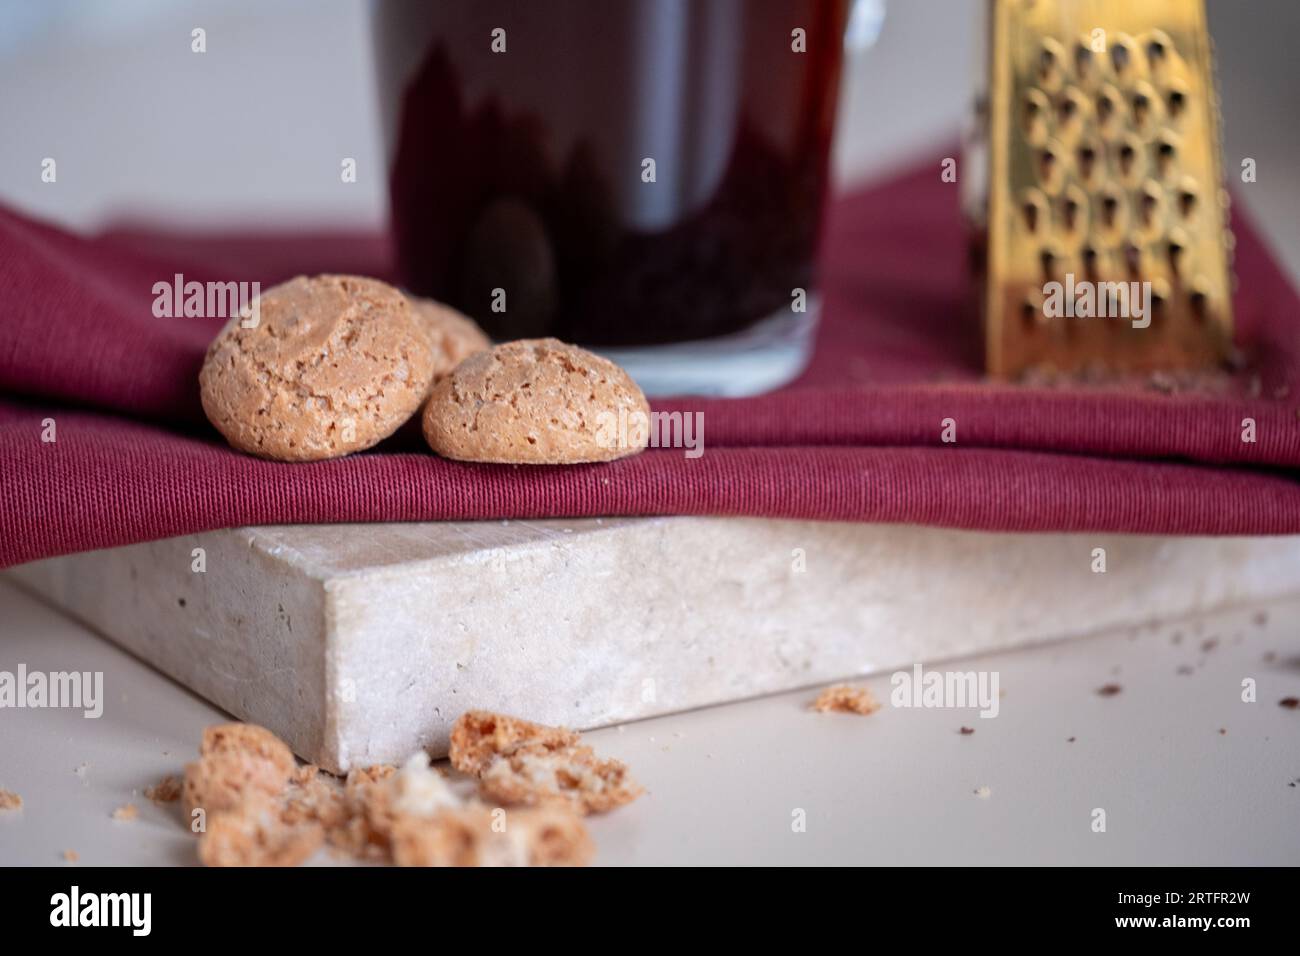 Biscuits Amaretto à côté d'une tasse à café en verre sur une serviette rouge et plateau en marbre Une petite râpe dorée en arrière-plan. Photo de haute qualité. Banque D'Images